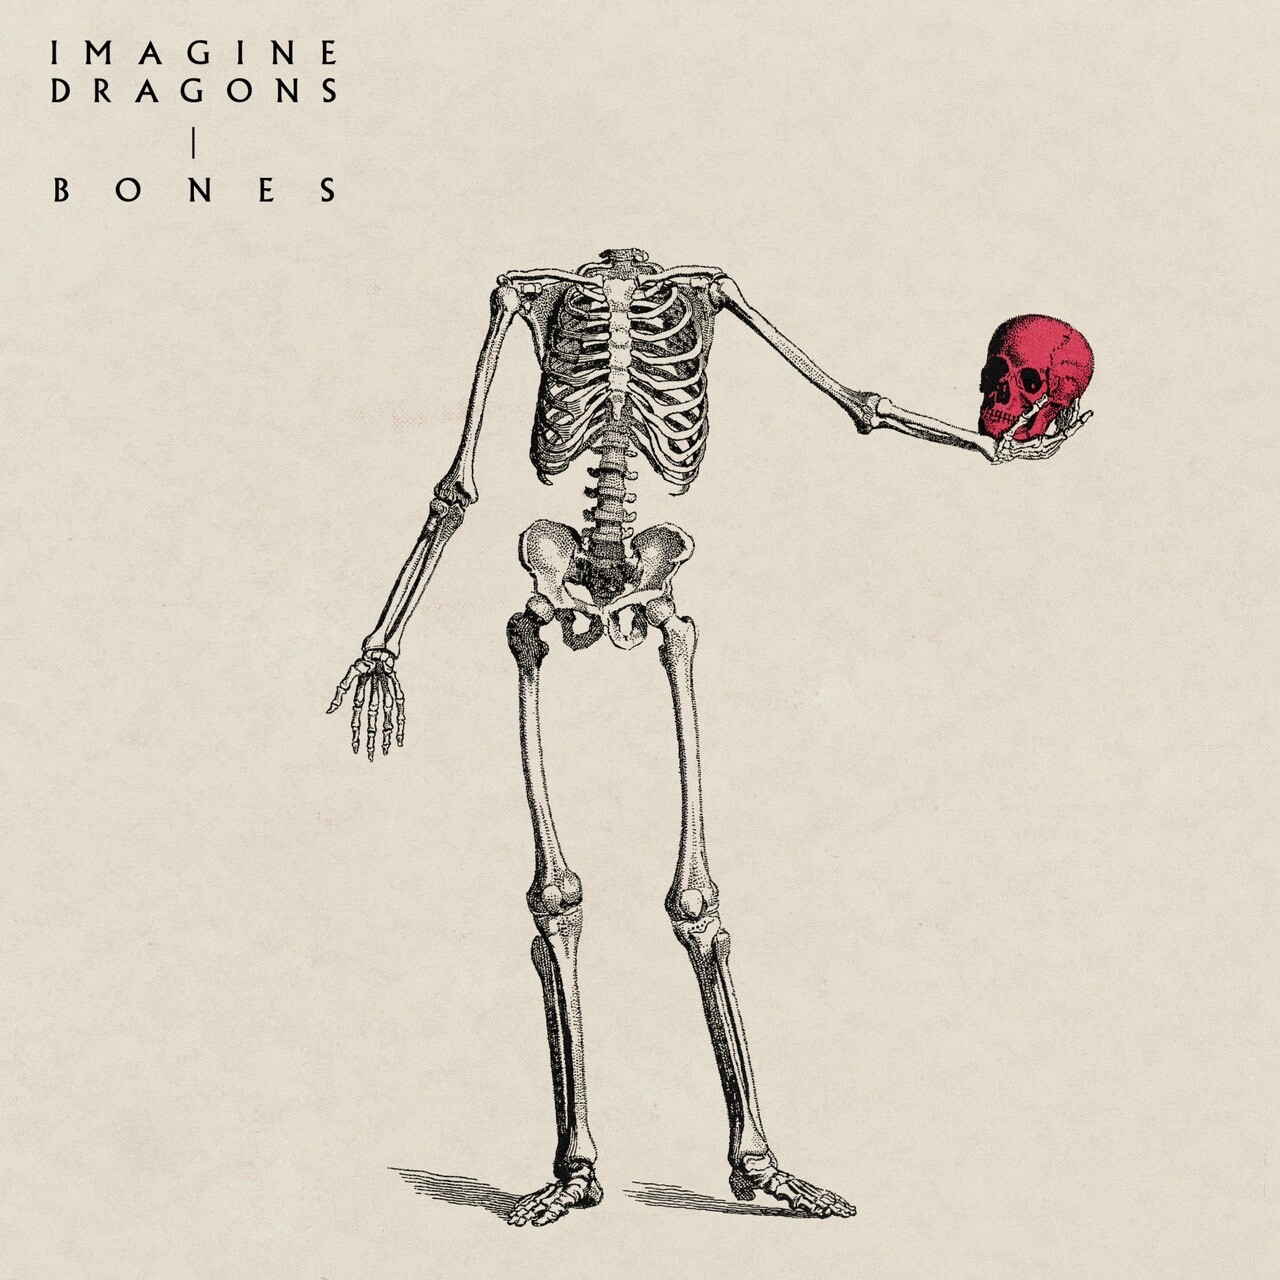 "Imagine Dragons" วงอัลเทอร์เนทีฟร็อกชื่อก้อง ปล่อยเพลงใหม่ "Bones" กับดนตรีป็อปร็อกติดหู สะท้อนความเปราะบางของชีวิต